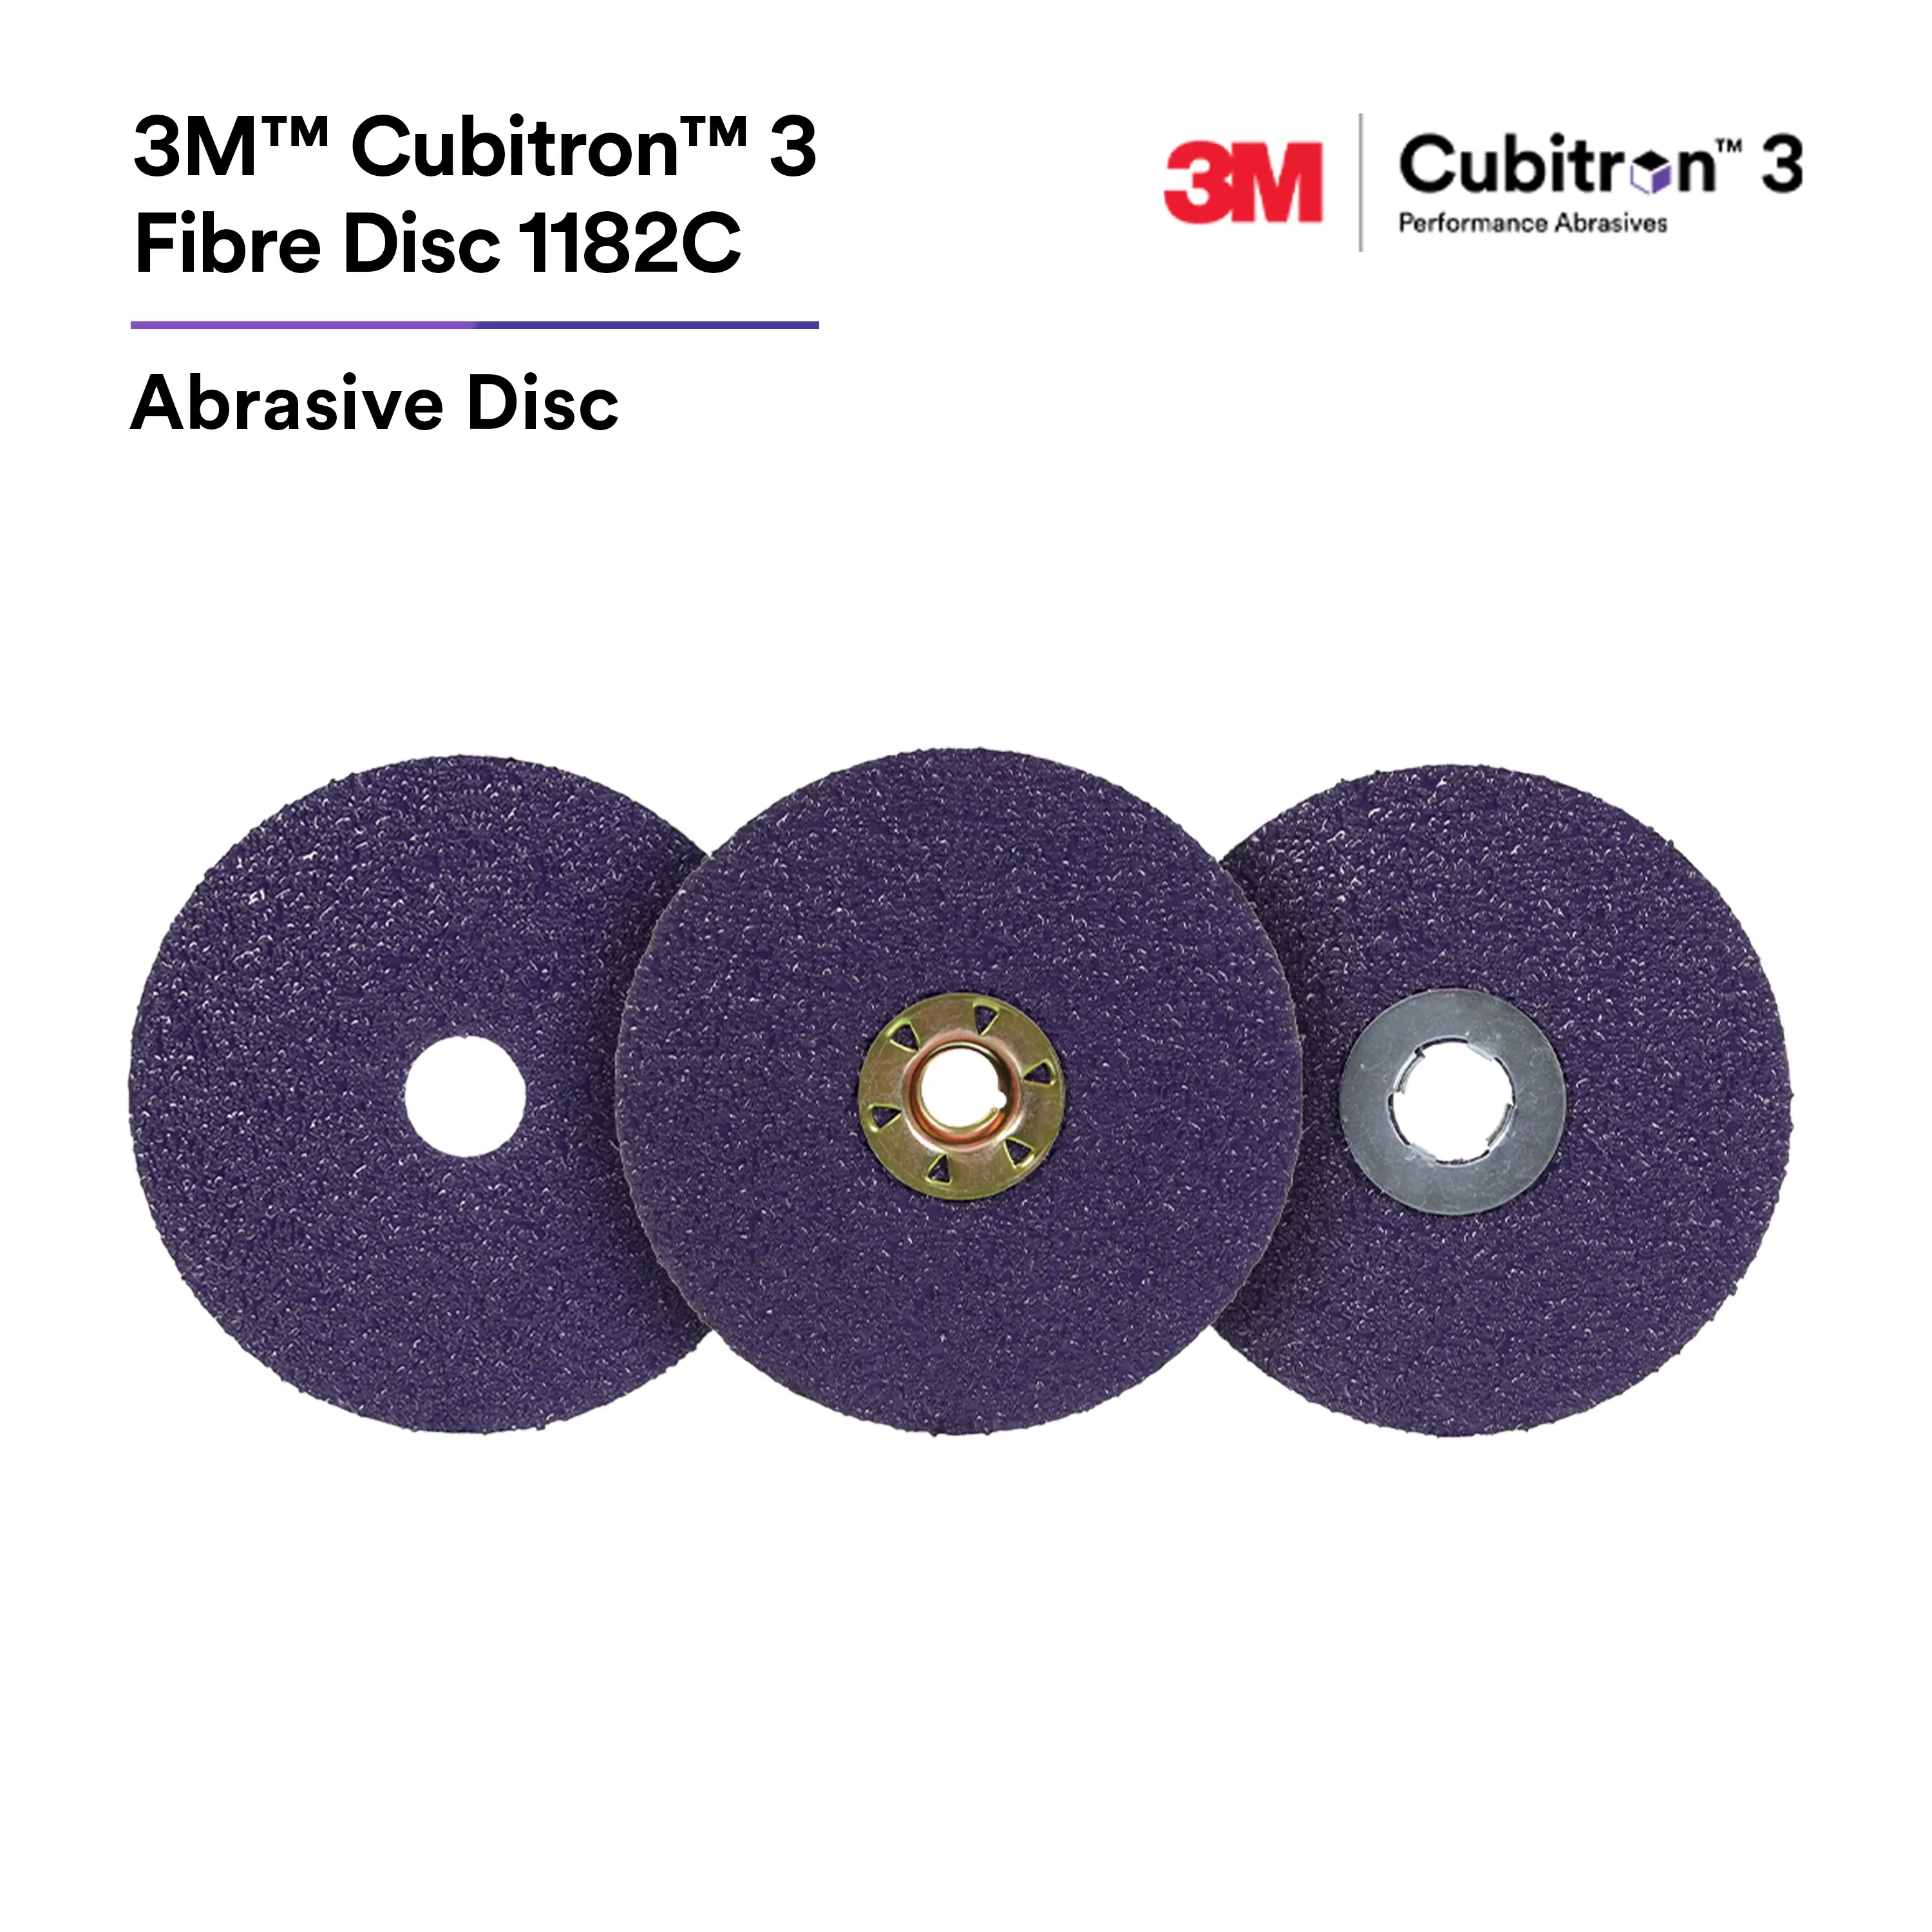 SKU 7100309797 | 3M™ Cubitron™ 3 Fibre Disc 1182C